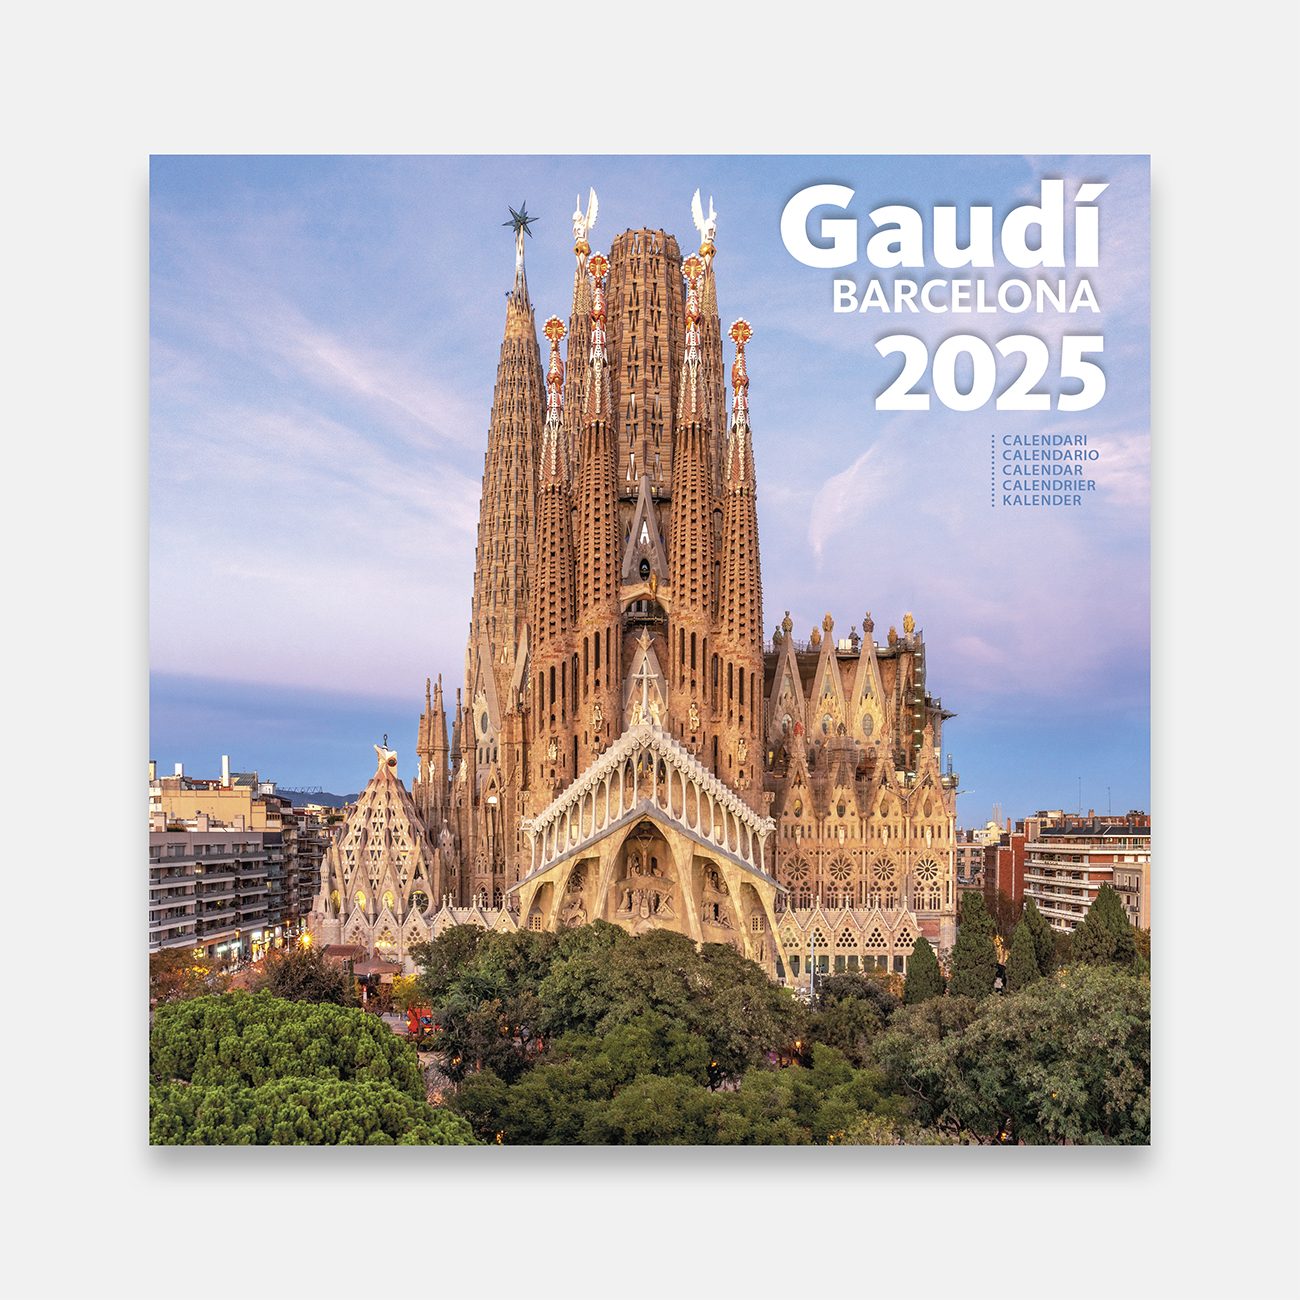 Calendari 2025 Gaudí (Sagrada Família) 25g1 b calendario pared 2025 gaudi sagrada familia